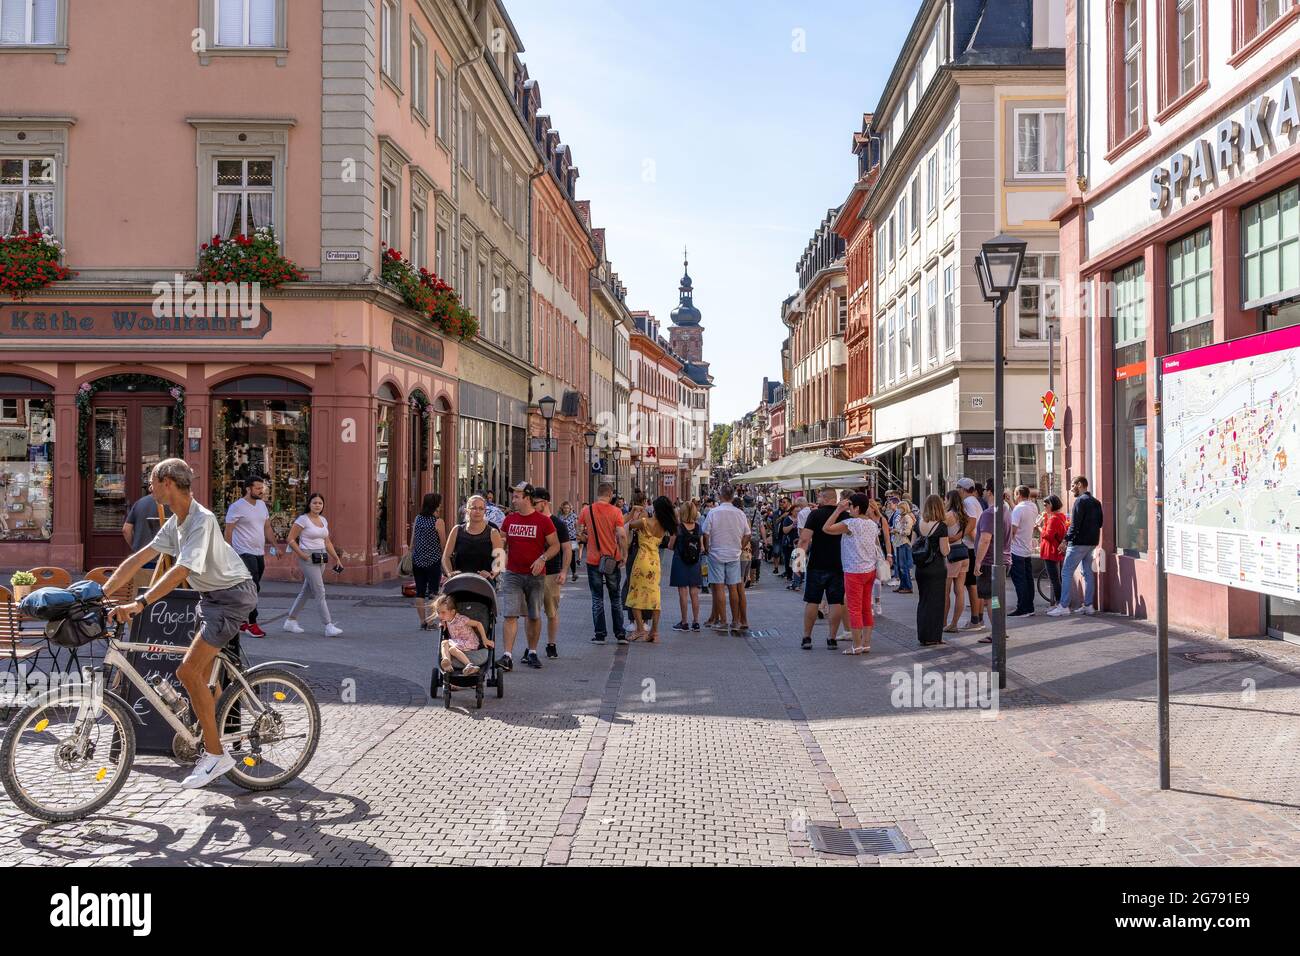 Europa, Germania, Baden-Wuerttemberg, Heidelberg, scena di strada nella zona pedonale del centro storico di Heidelberg Foto Stock